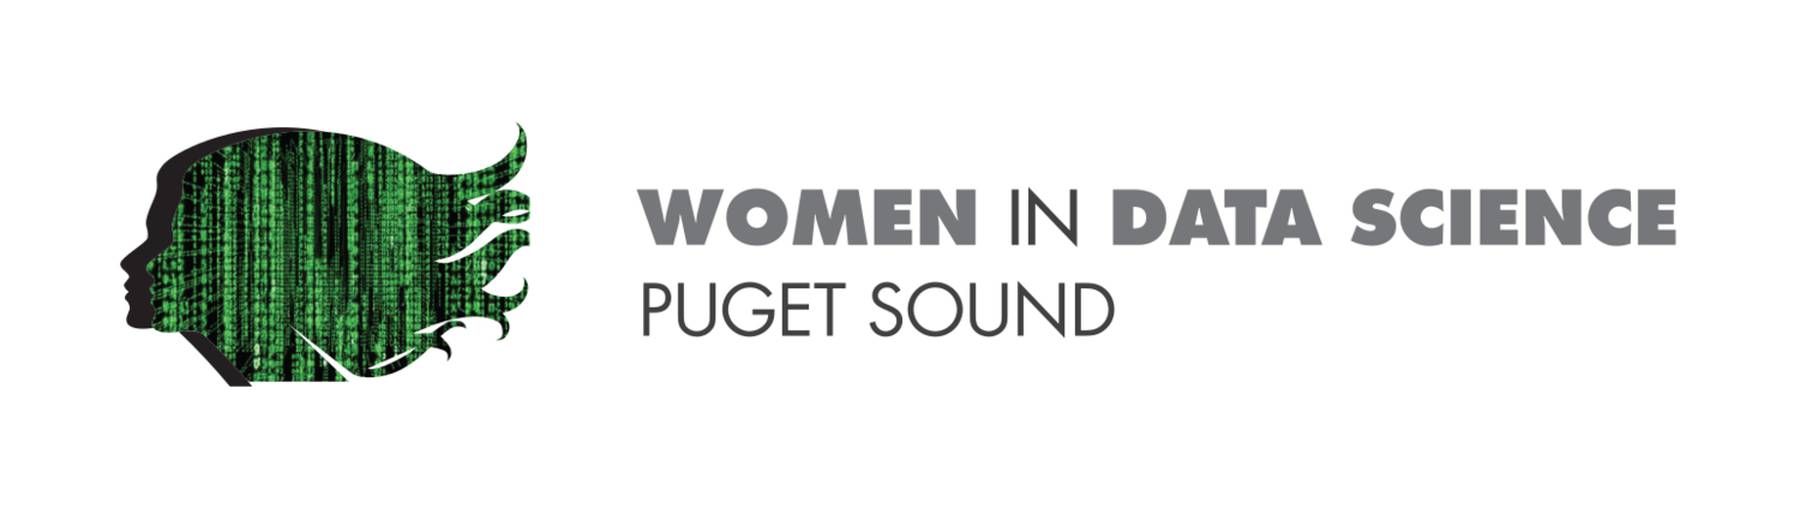 Women in Data Science Puget Sound 2021